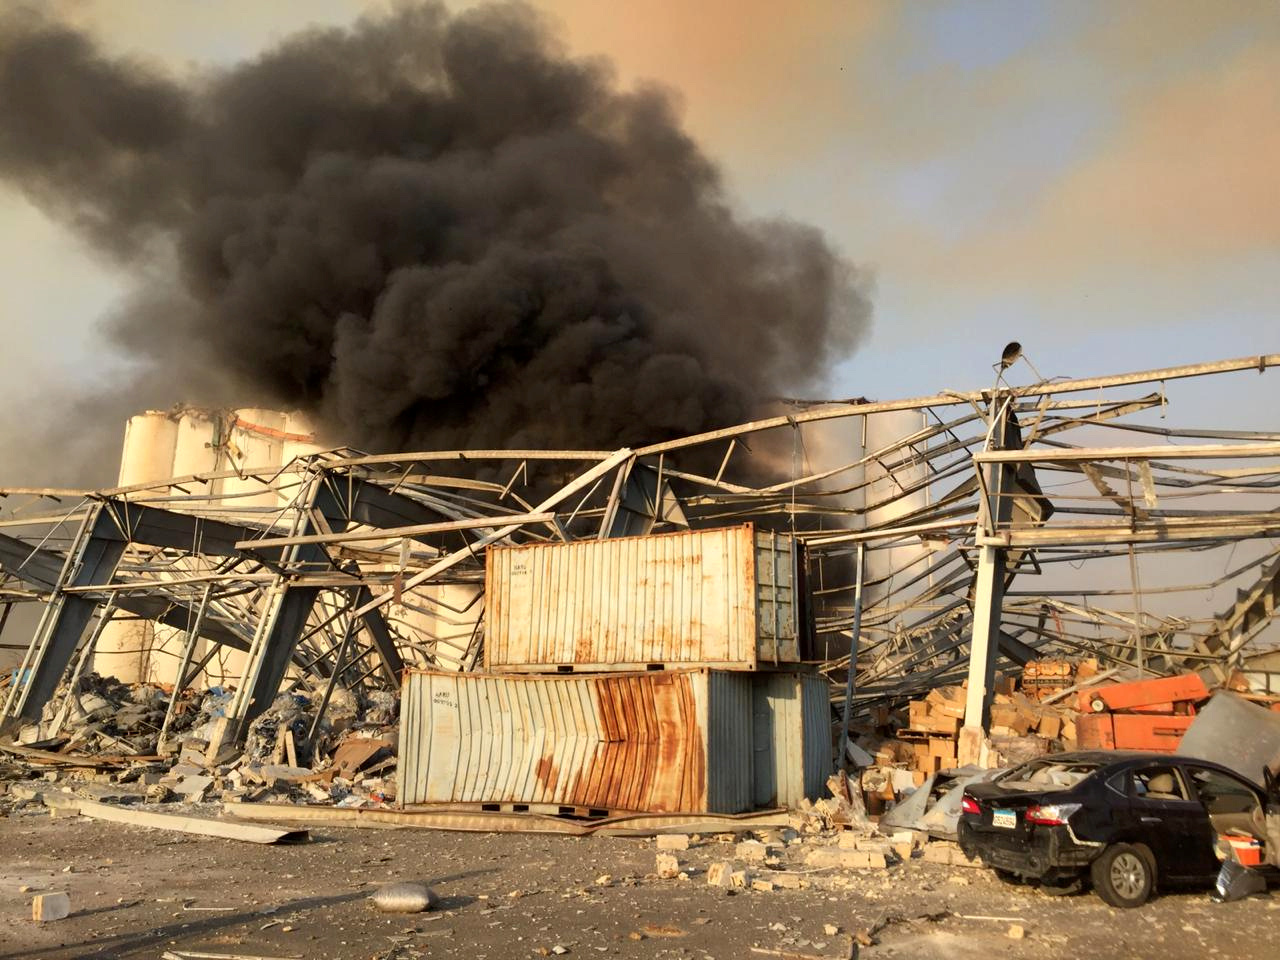 Como el humo del incendio y la primera explosión era visible a distancia, varias personas desde numerosos puntos de la capital se encontraban grabando la escena cuando ocurrió la explosión (Reuters/ Mohamed Azakir)